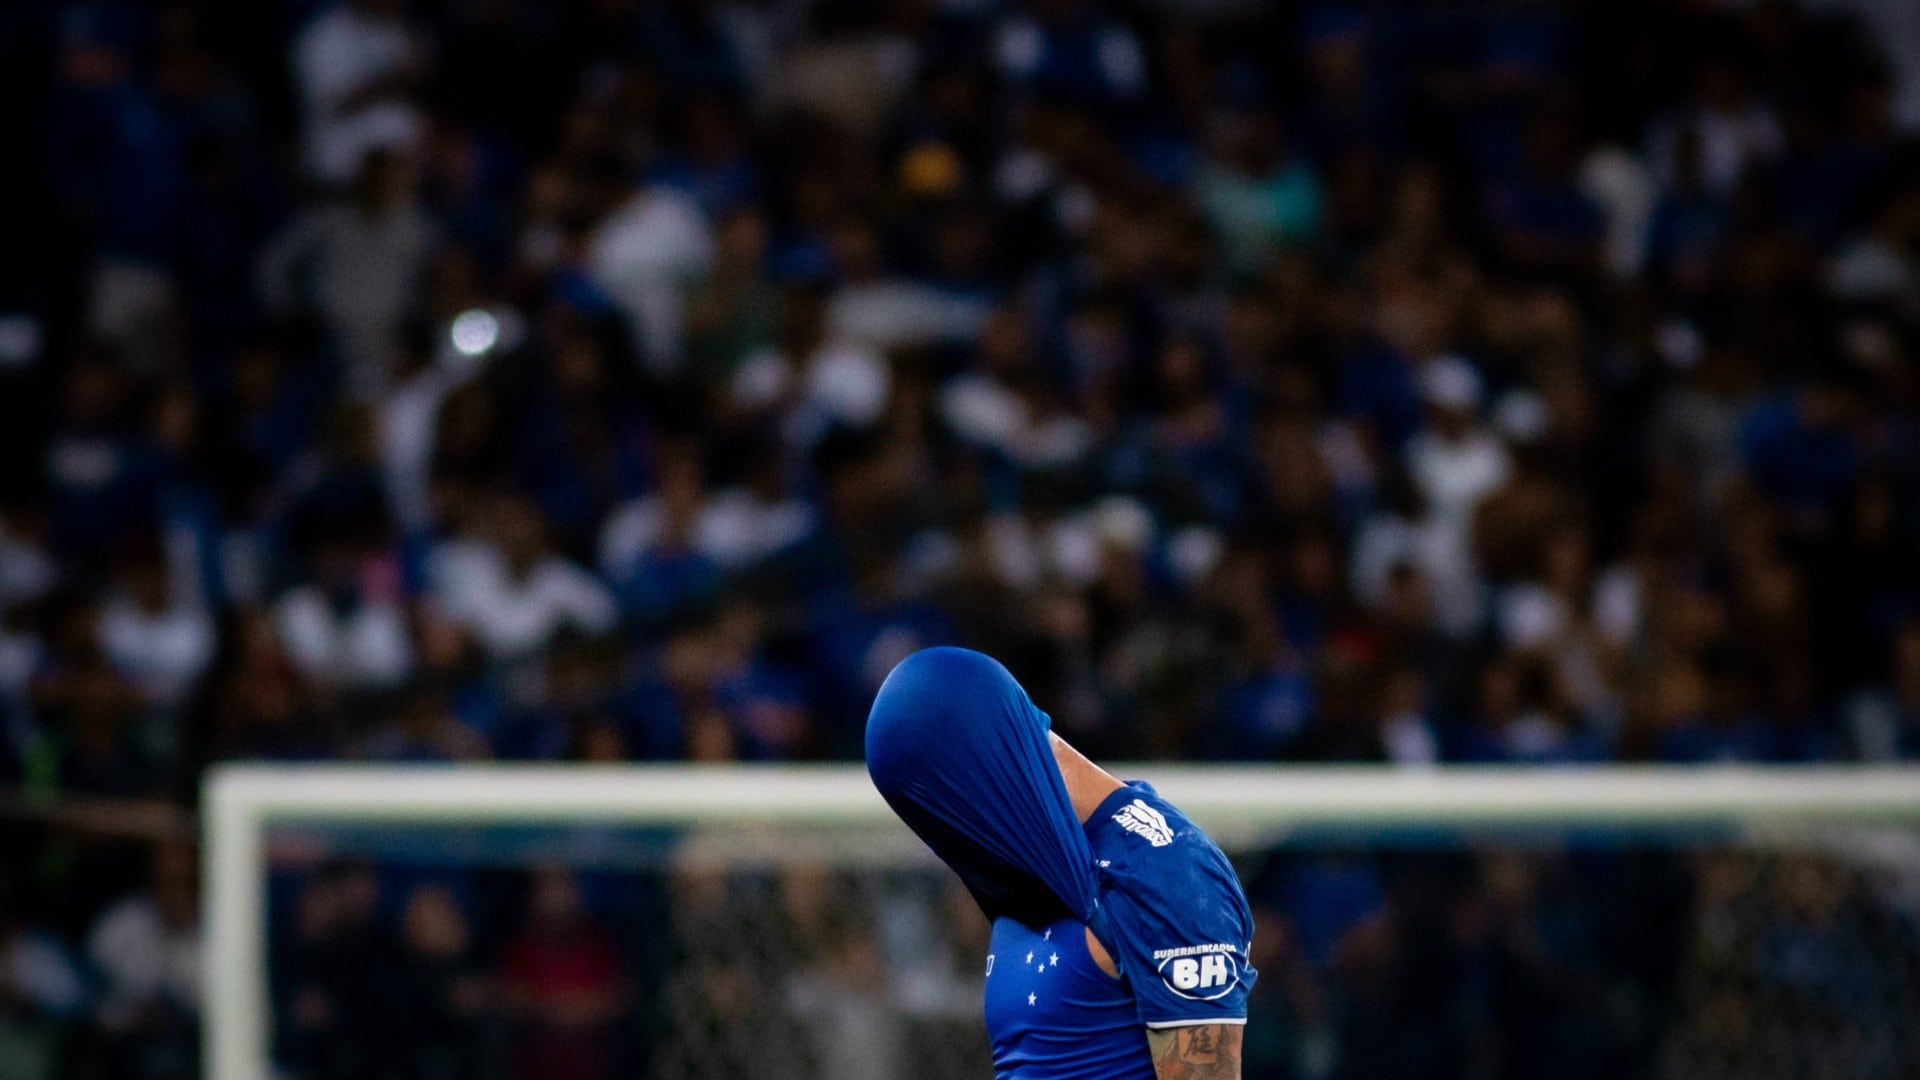 Joueur de Cruzeiro couvrant sa tête avec une chemise lors d'un match de football dans un stade